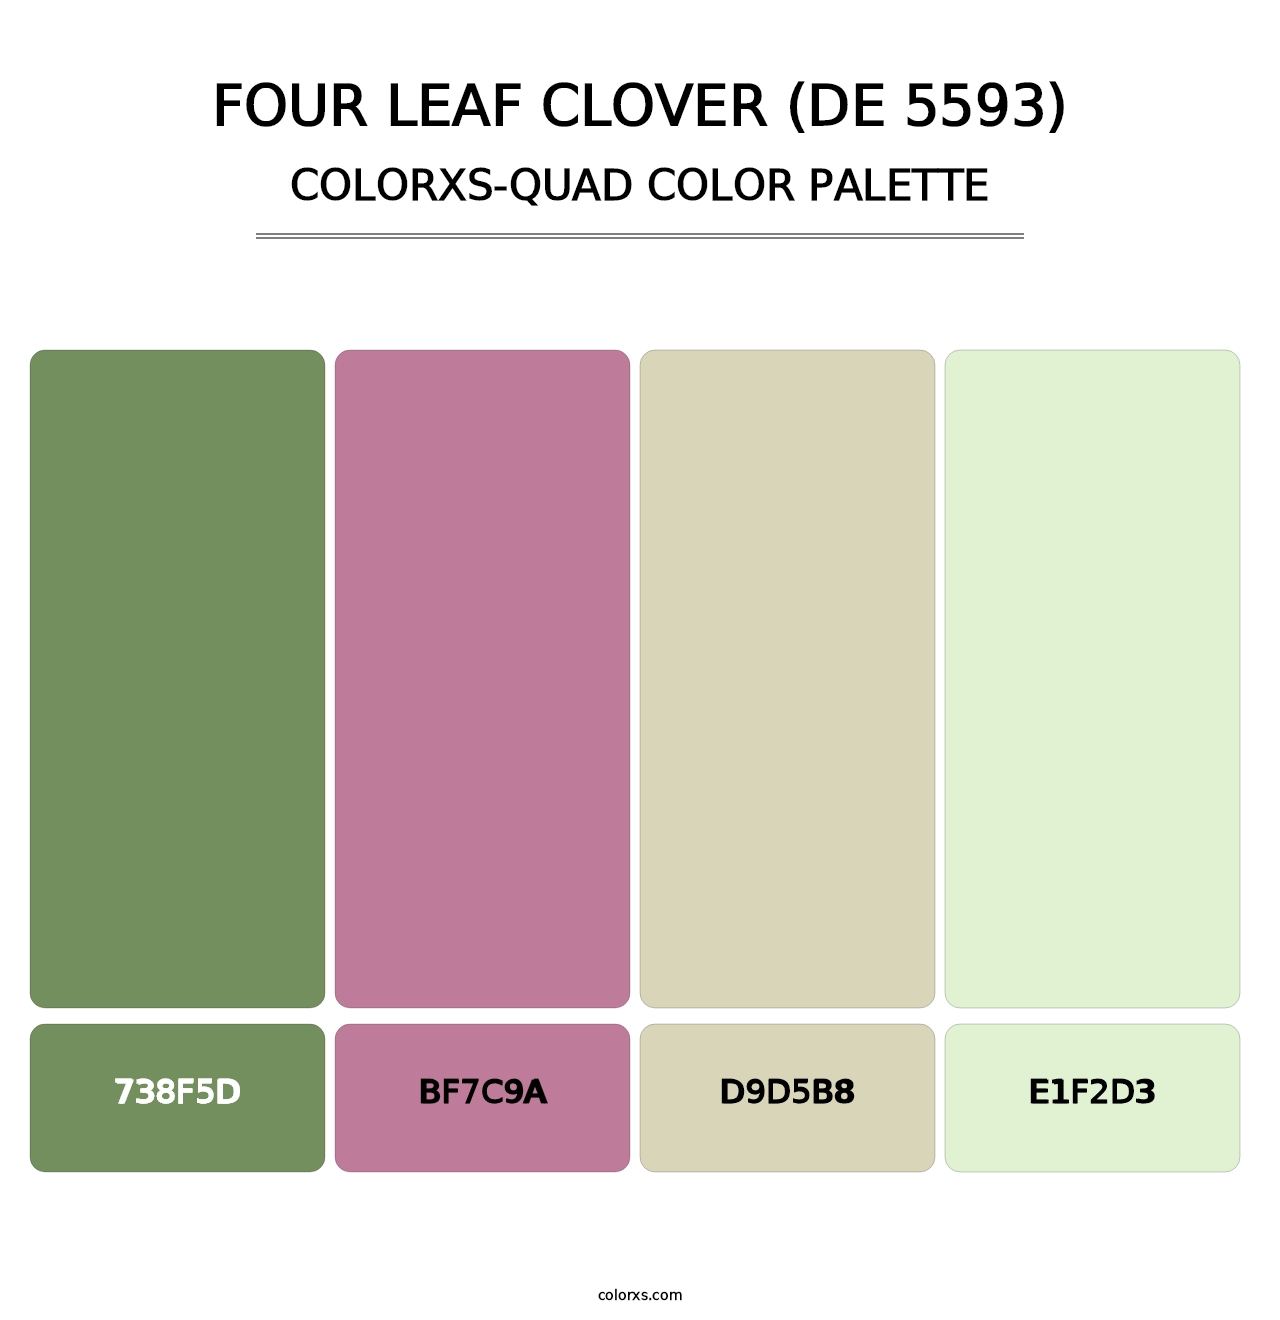 Four Leaf Clover (DE 5593) - Colorxs Quad Palette